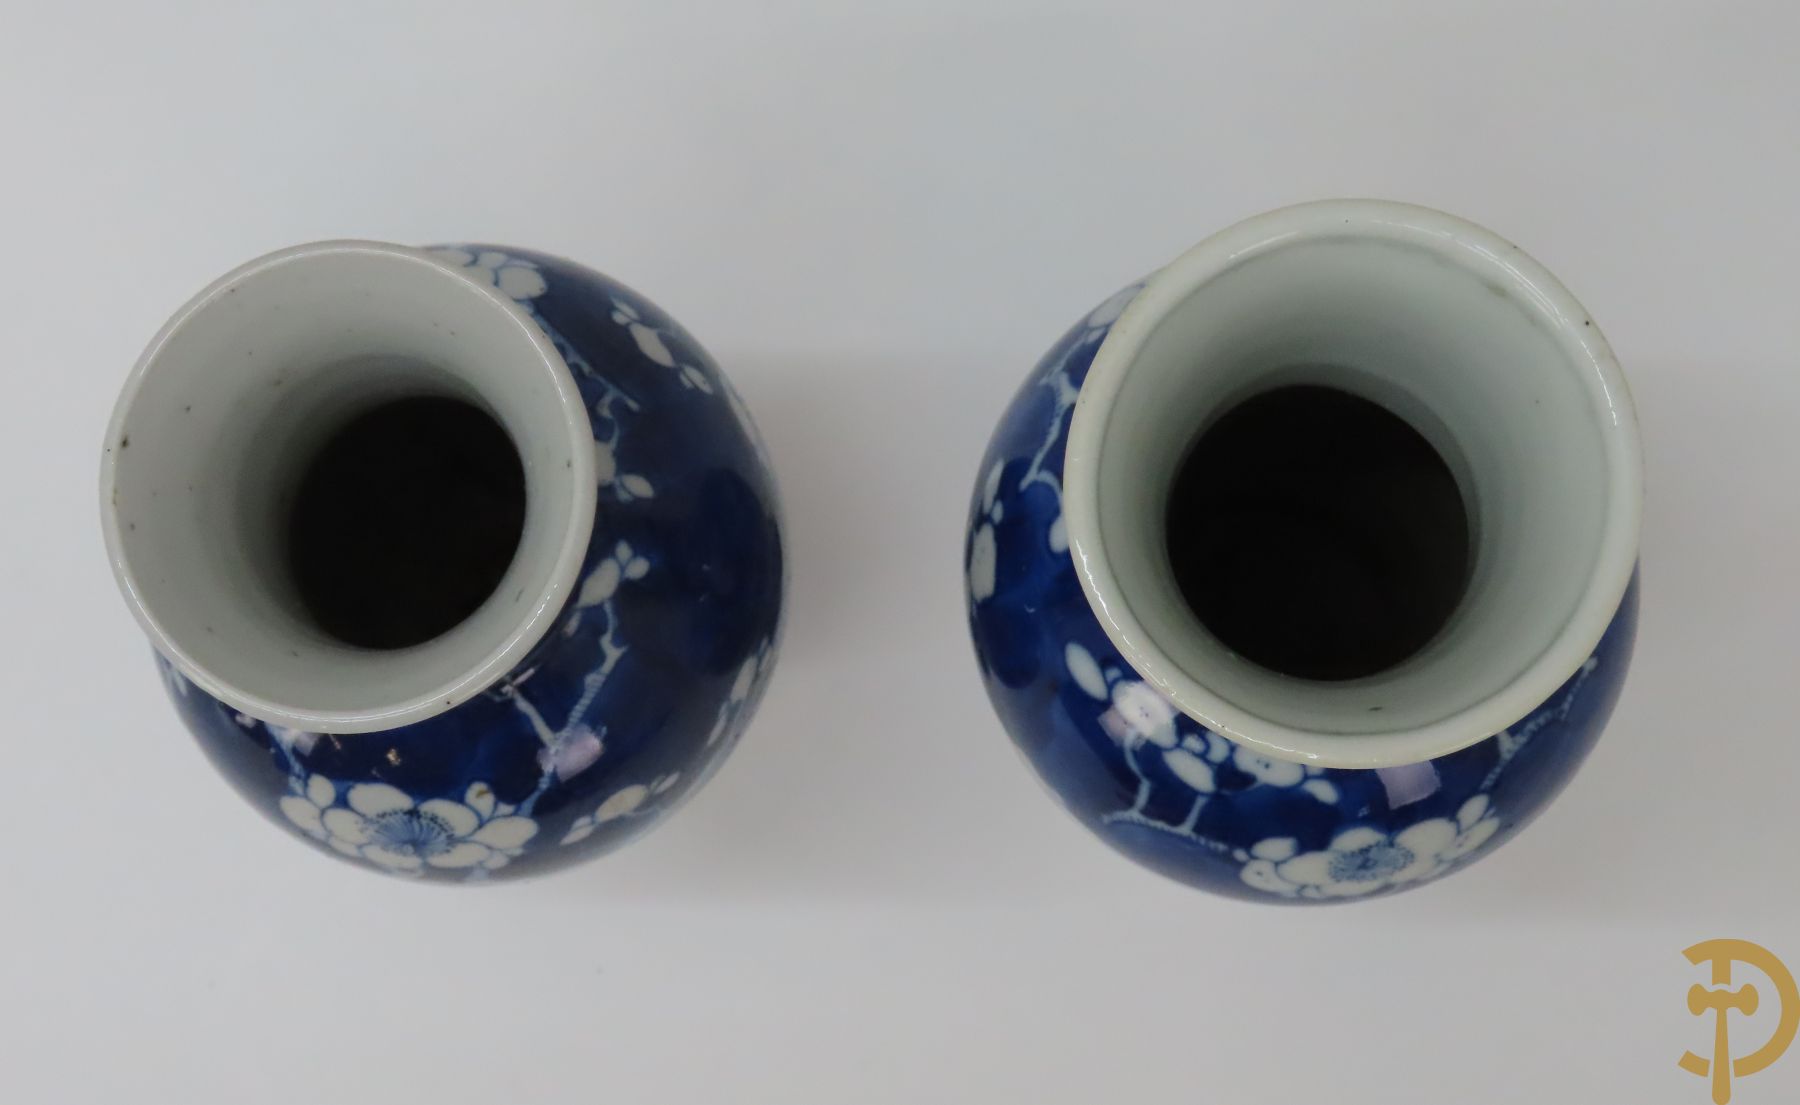 Chinees porseleinen blauw/wit vaasje met wijsgeren in landschap + 2 porseleinen blauw/wit vaasjes met bloemendecor, onderaan gemerkt